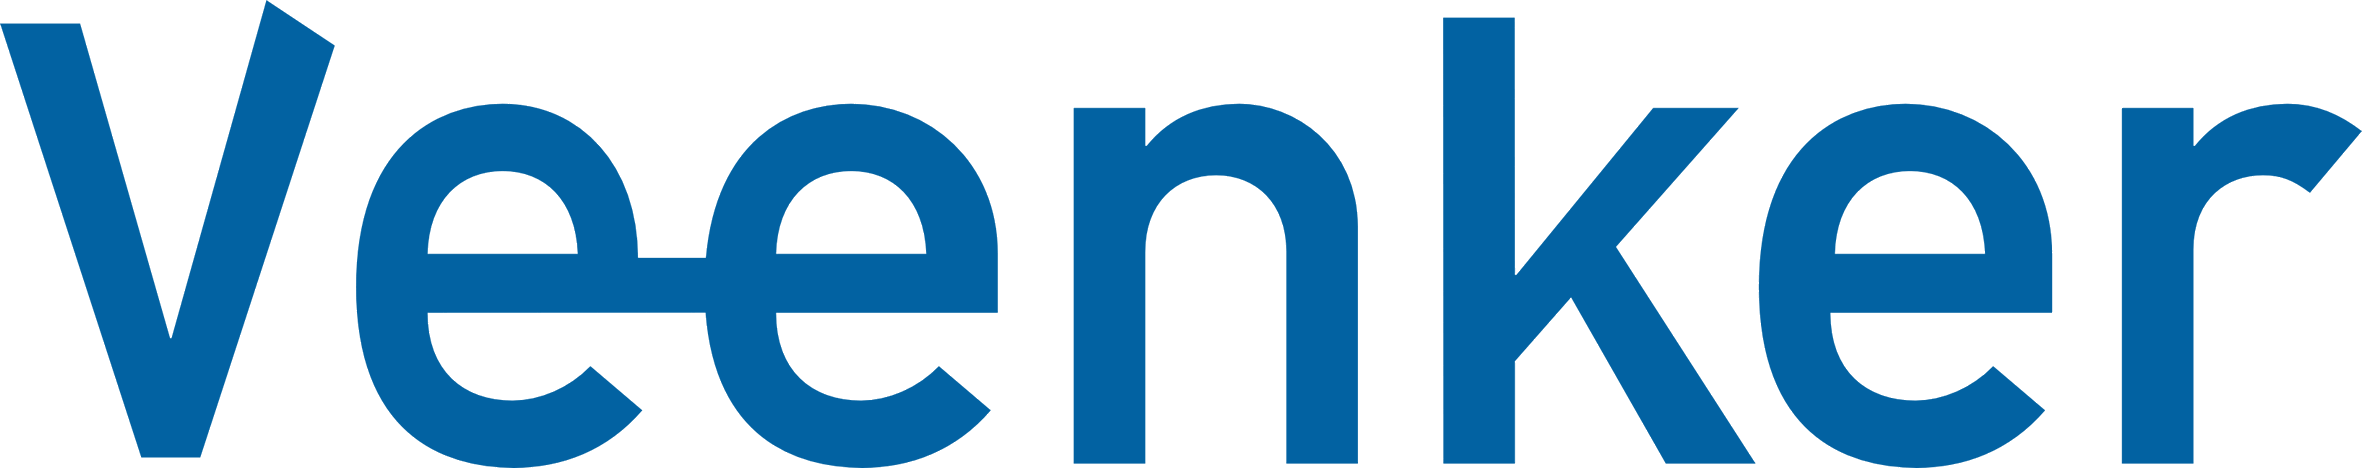 Logo_Veenker